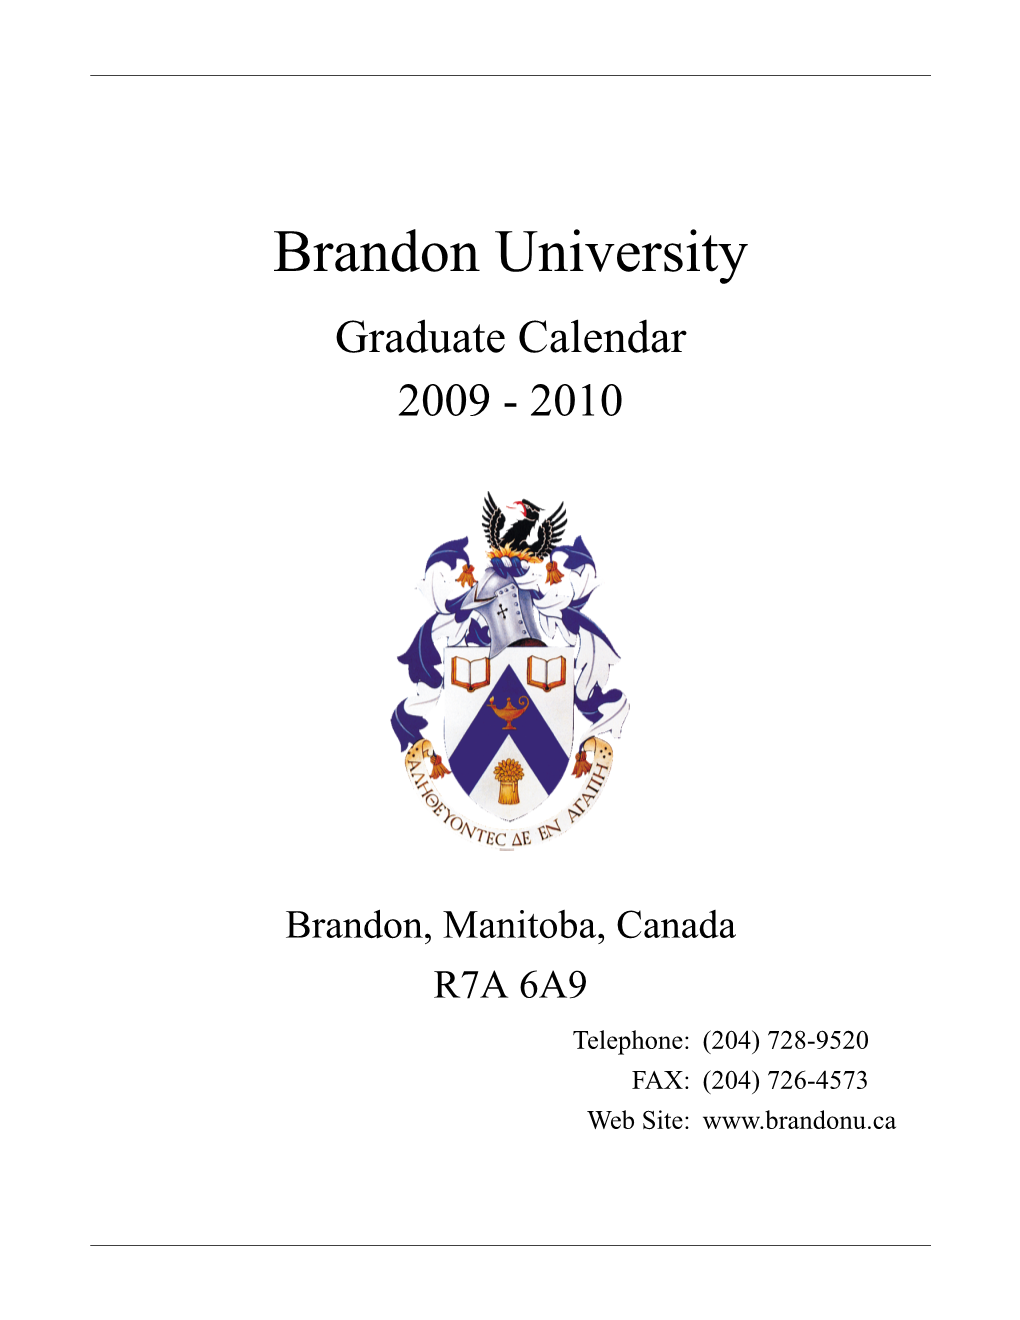 Graduate Calendar 2009-2010